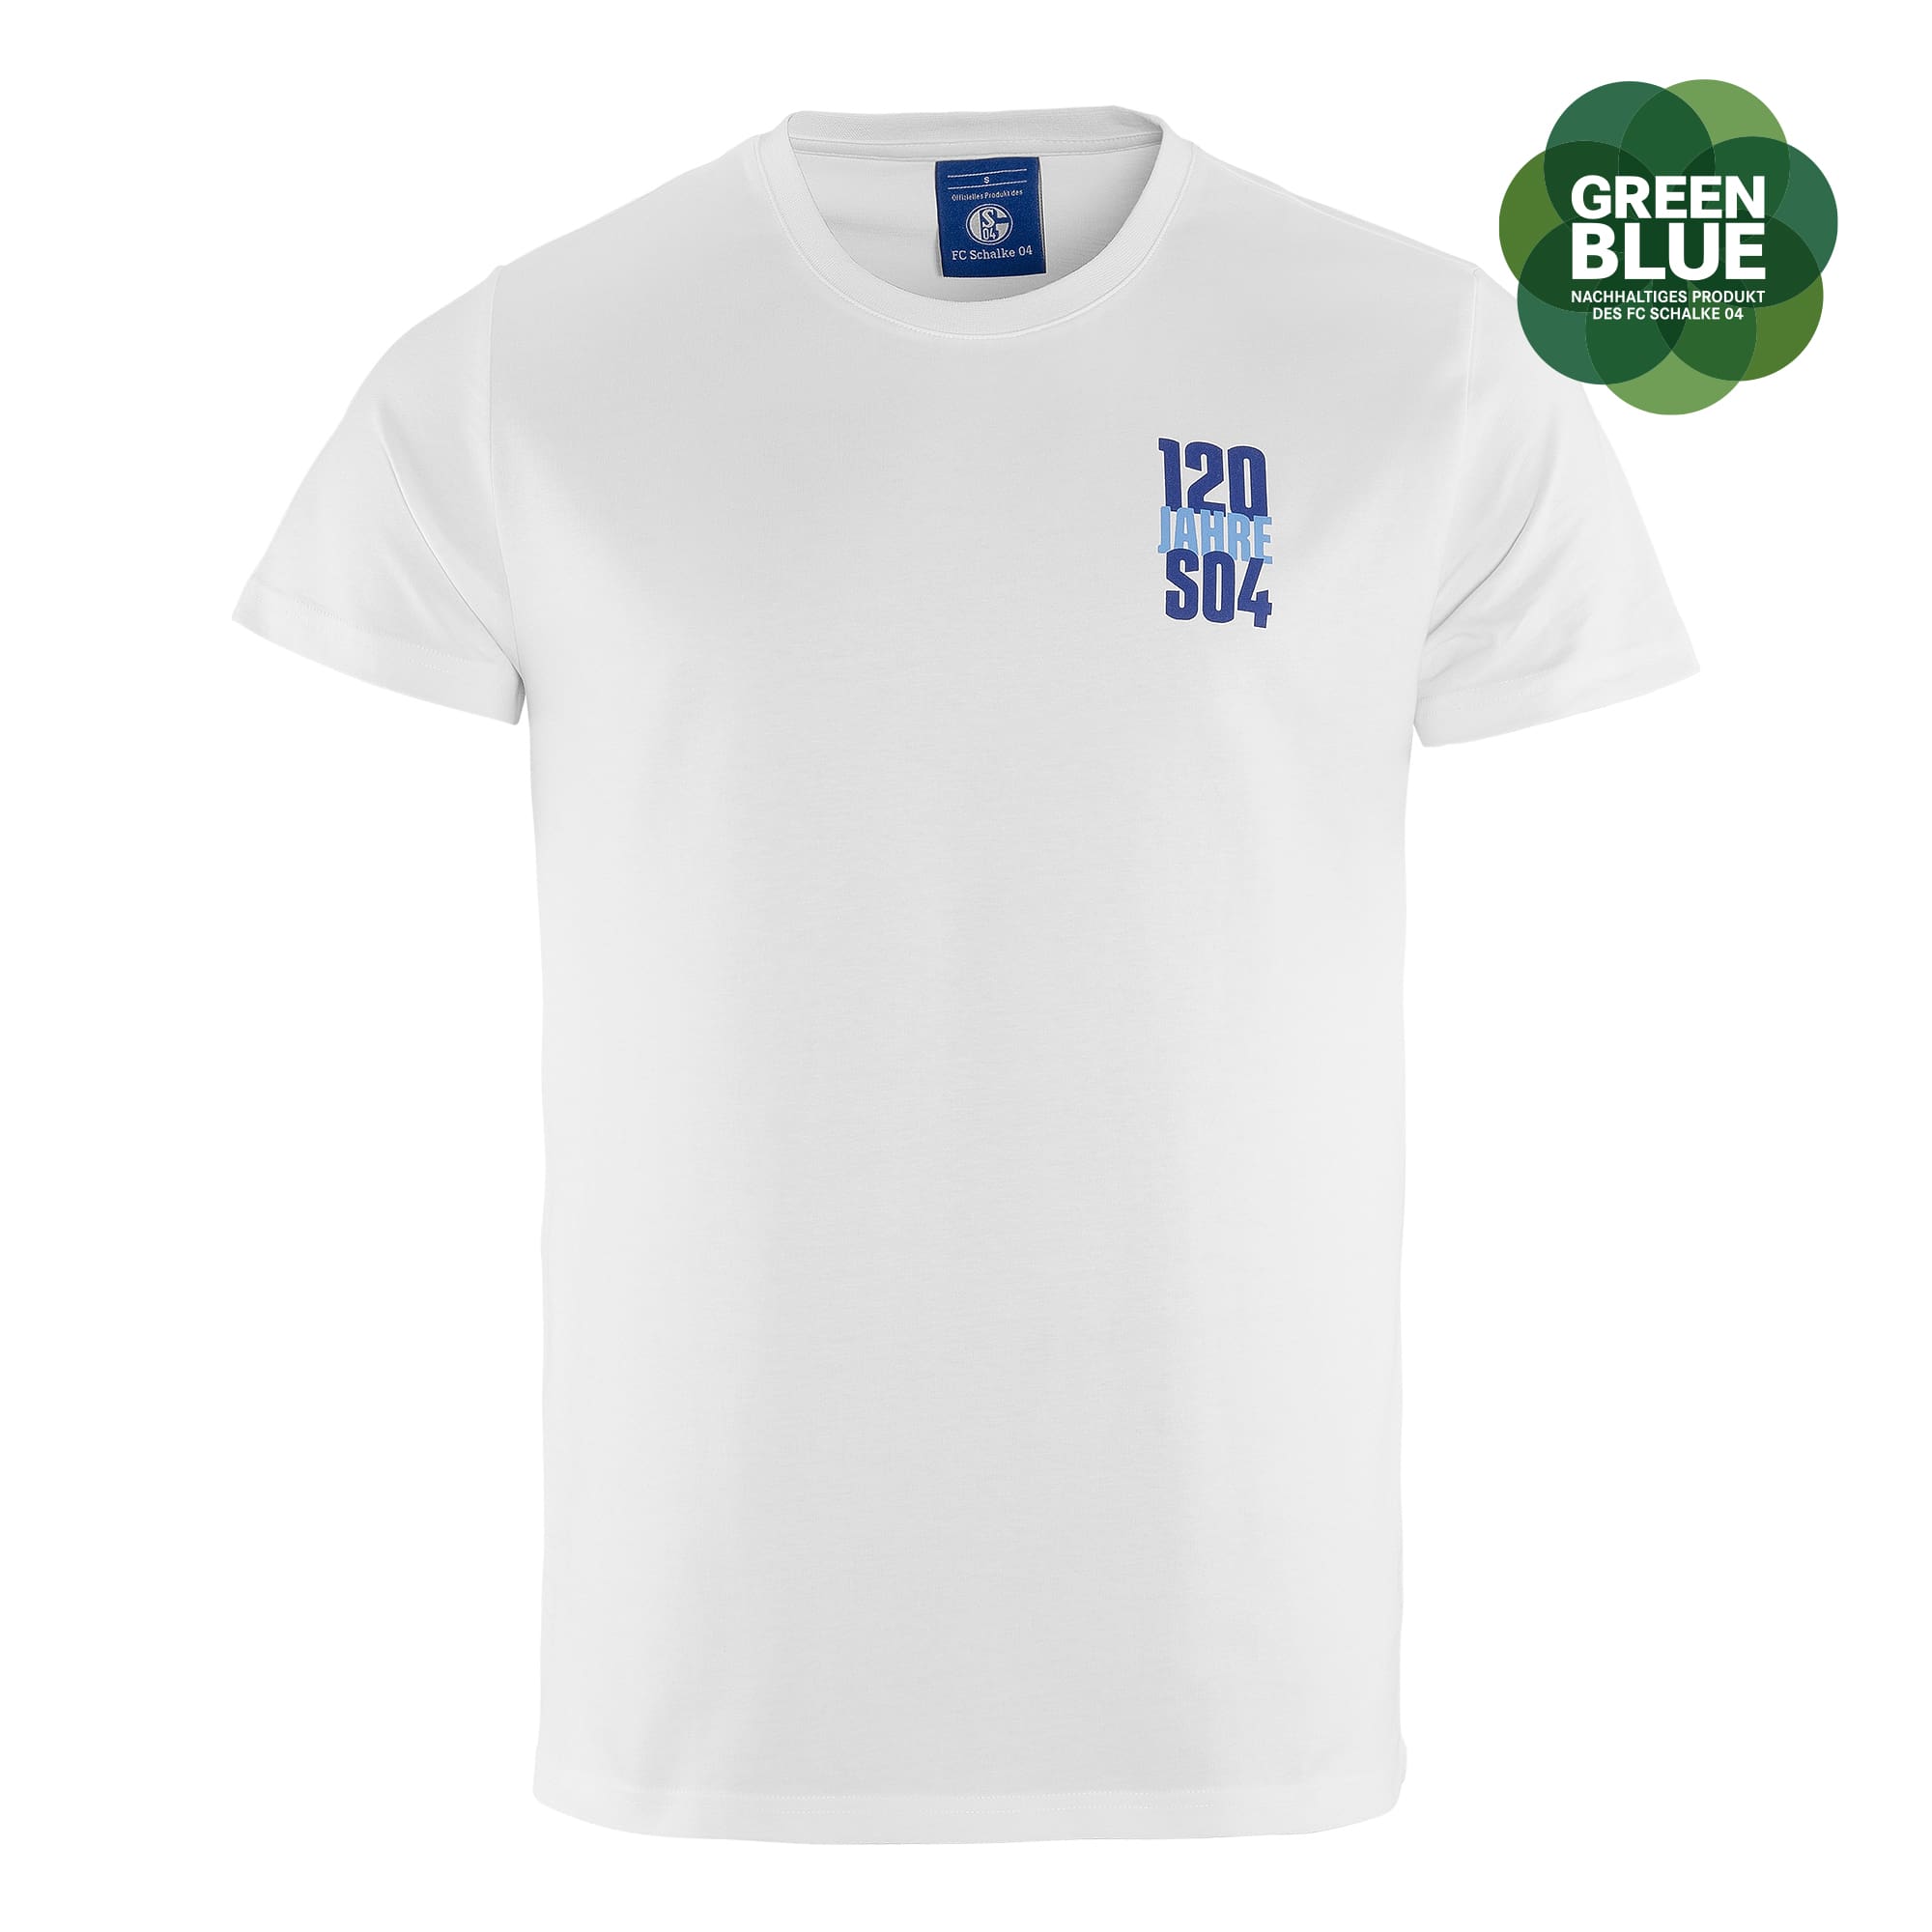 T-Shirt 120 Jahre weiß VT